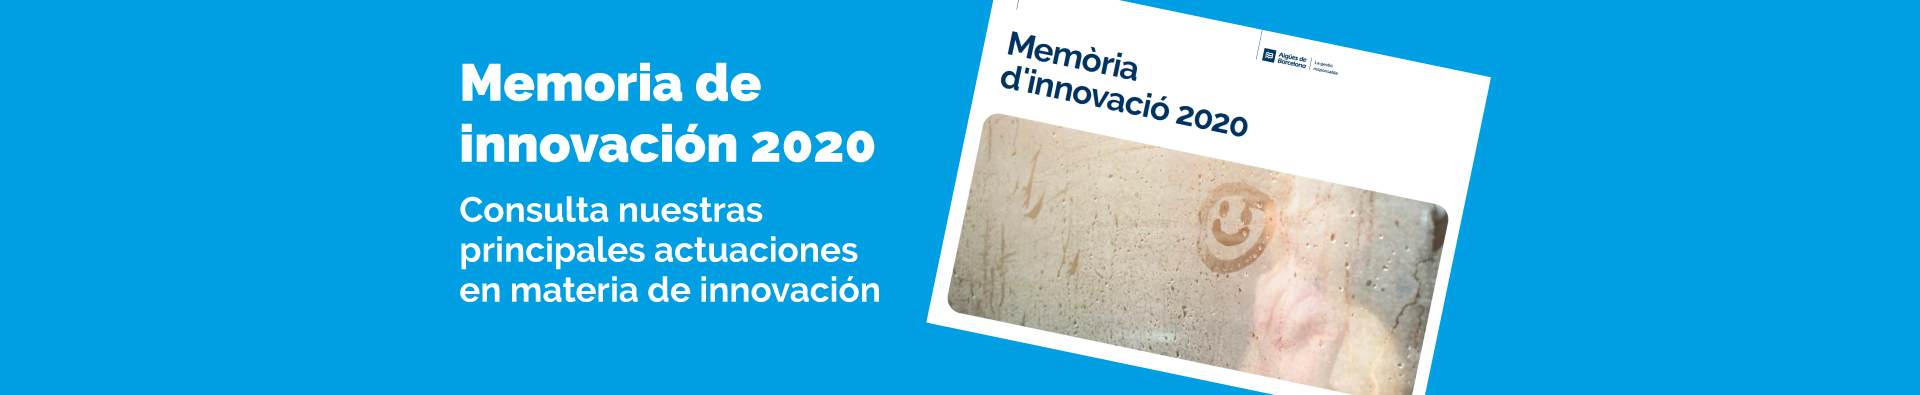 Memoria de Innovación 2020